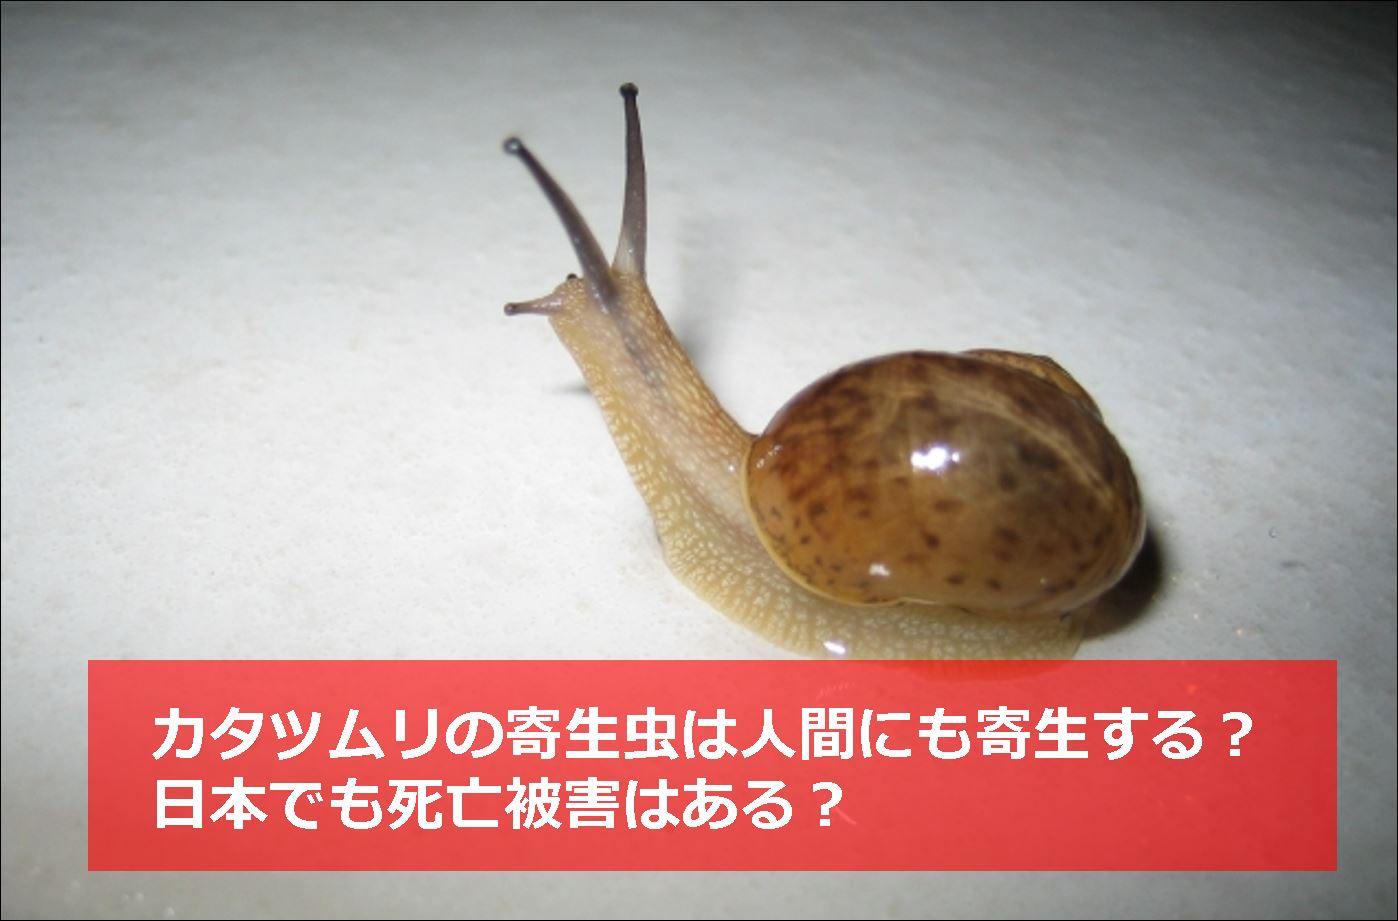 カタツムリの寄生虫は人間にも寄生する 日本でも死亡被害はある 生物モラトリアム